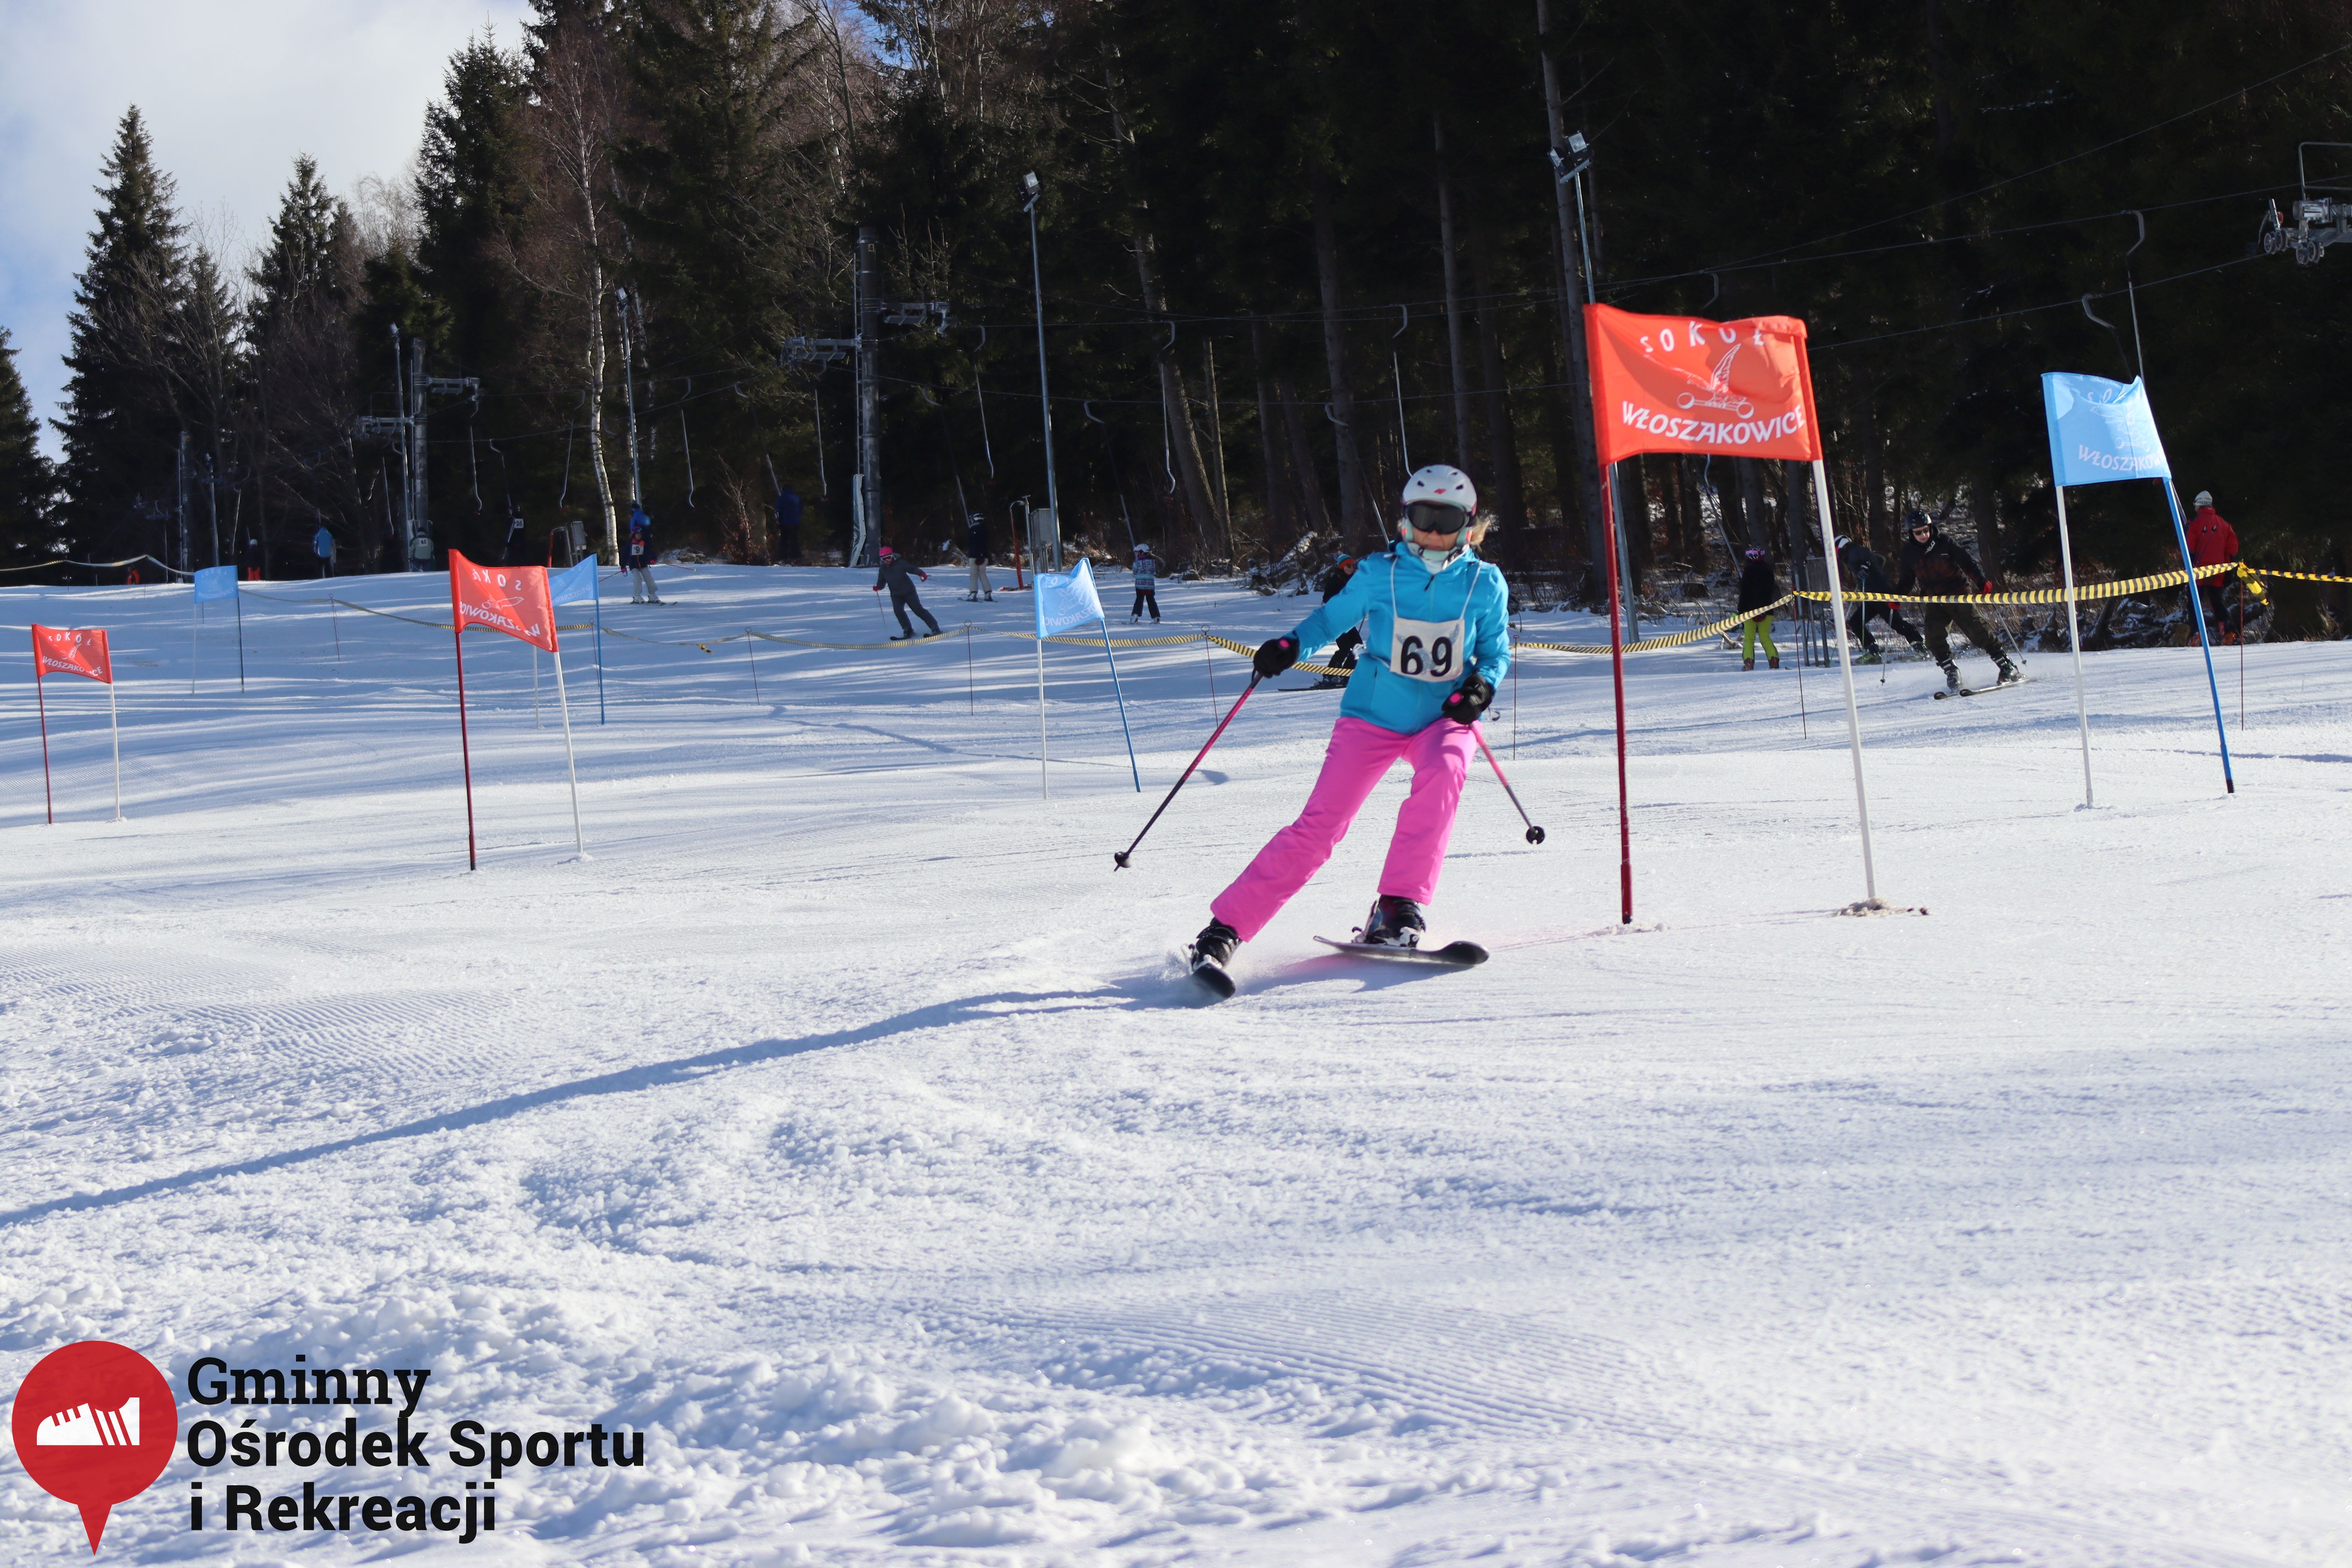 2022.02.12 - 18. Mistrzostwa Gminy Woszakowice w narciarstwie075.jpg - 2,52 MB